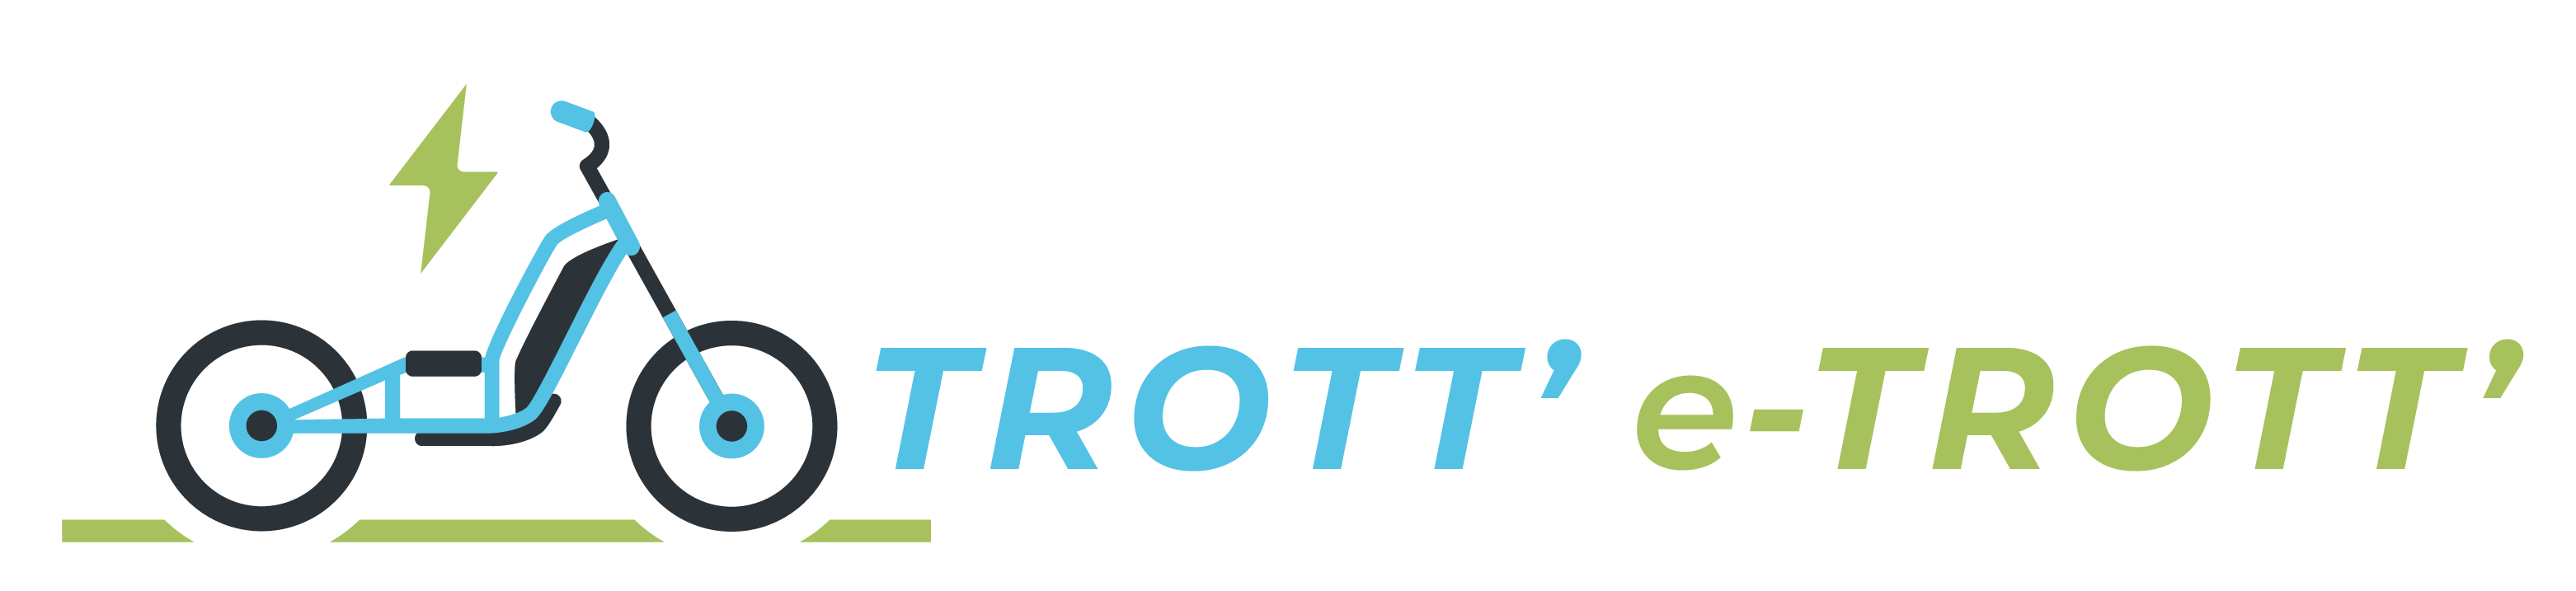 Trott-e-trott